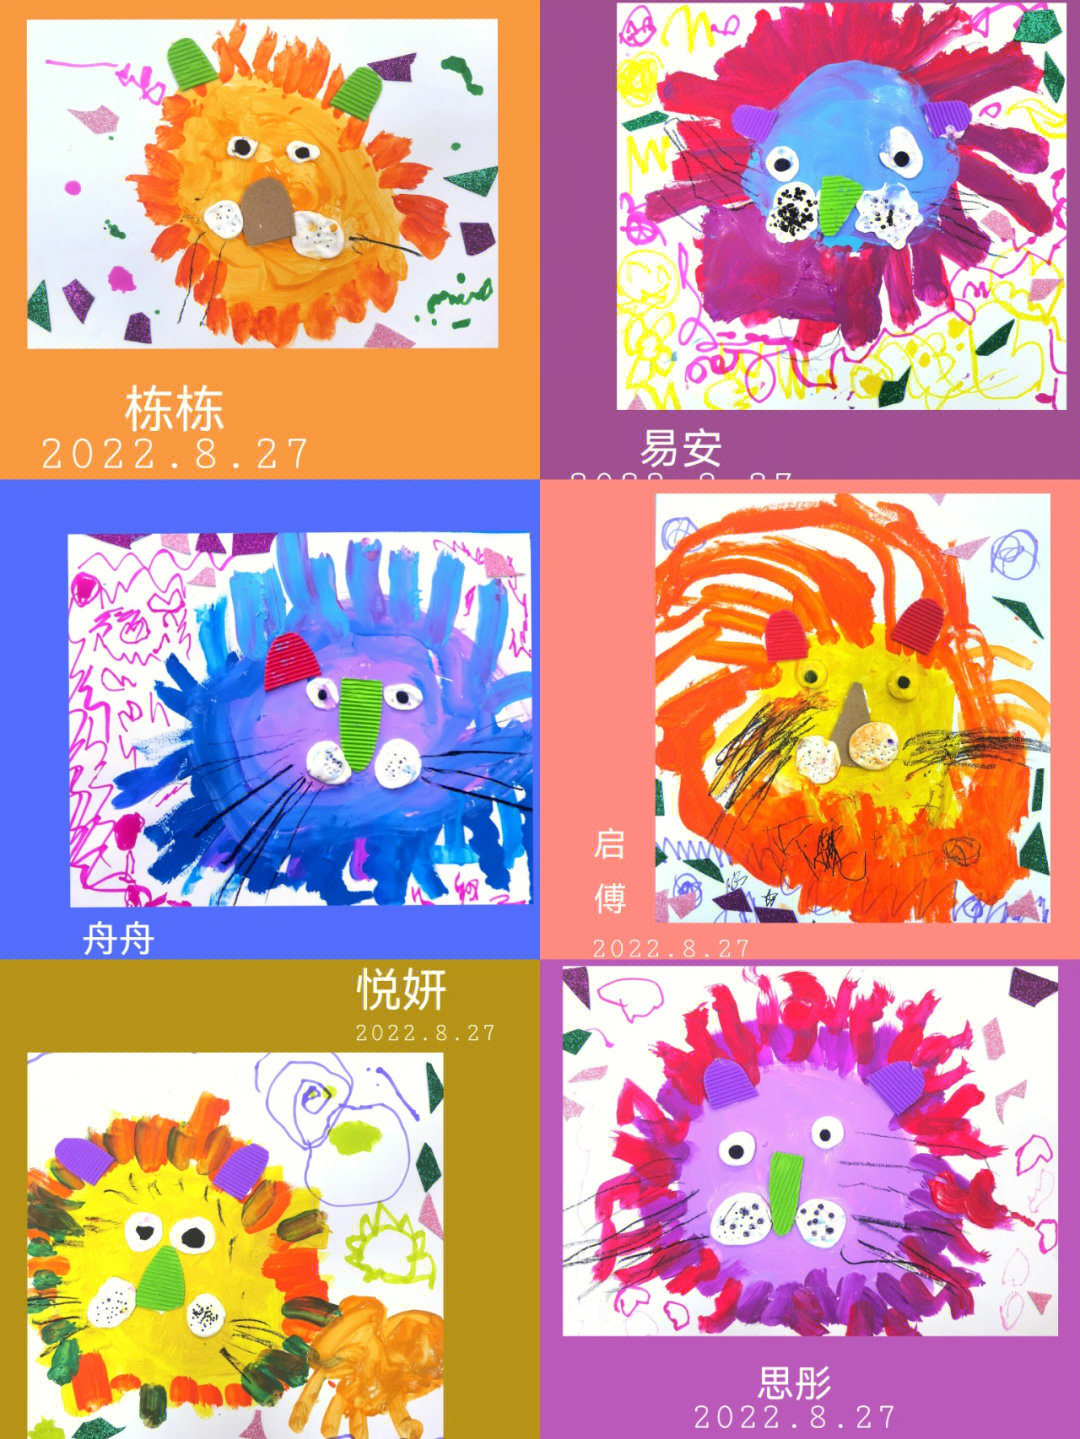 主题《狮子的发型》教学目标1,通过涂鸦和粘贴的方式制作出狮子的造型